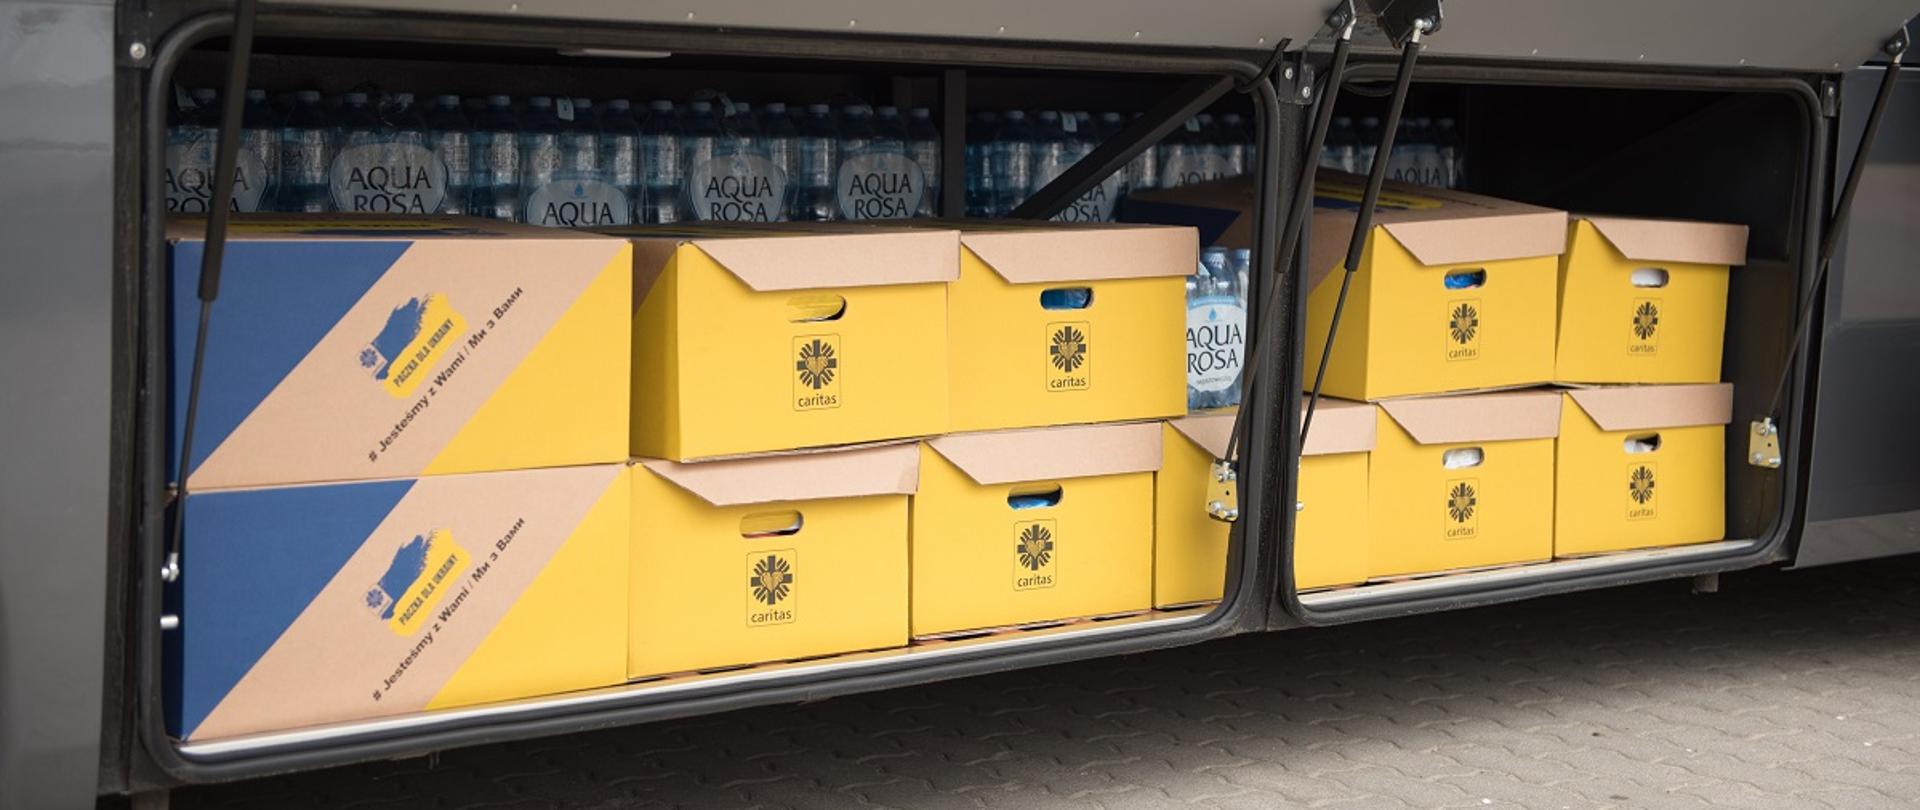 Na zdjęciu jeden z bagażników autobusu Zespołu Szkół Centrum Kształcenia Rolniczego w Sokołowie Podlaskim, do którego zapakowano wodę oraz żółto - niebieskie kartony z darami z logo Caritas przeznaczonymi dla ludności w Ukrainie